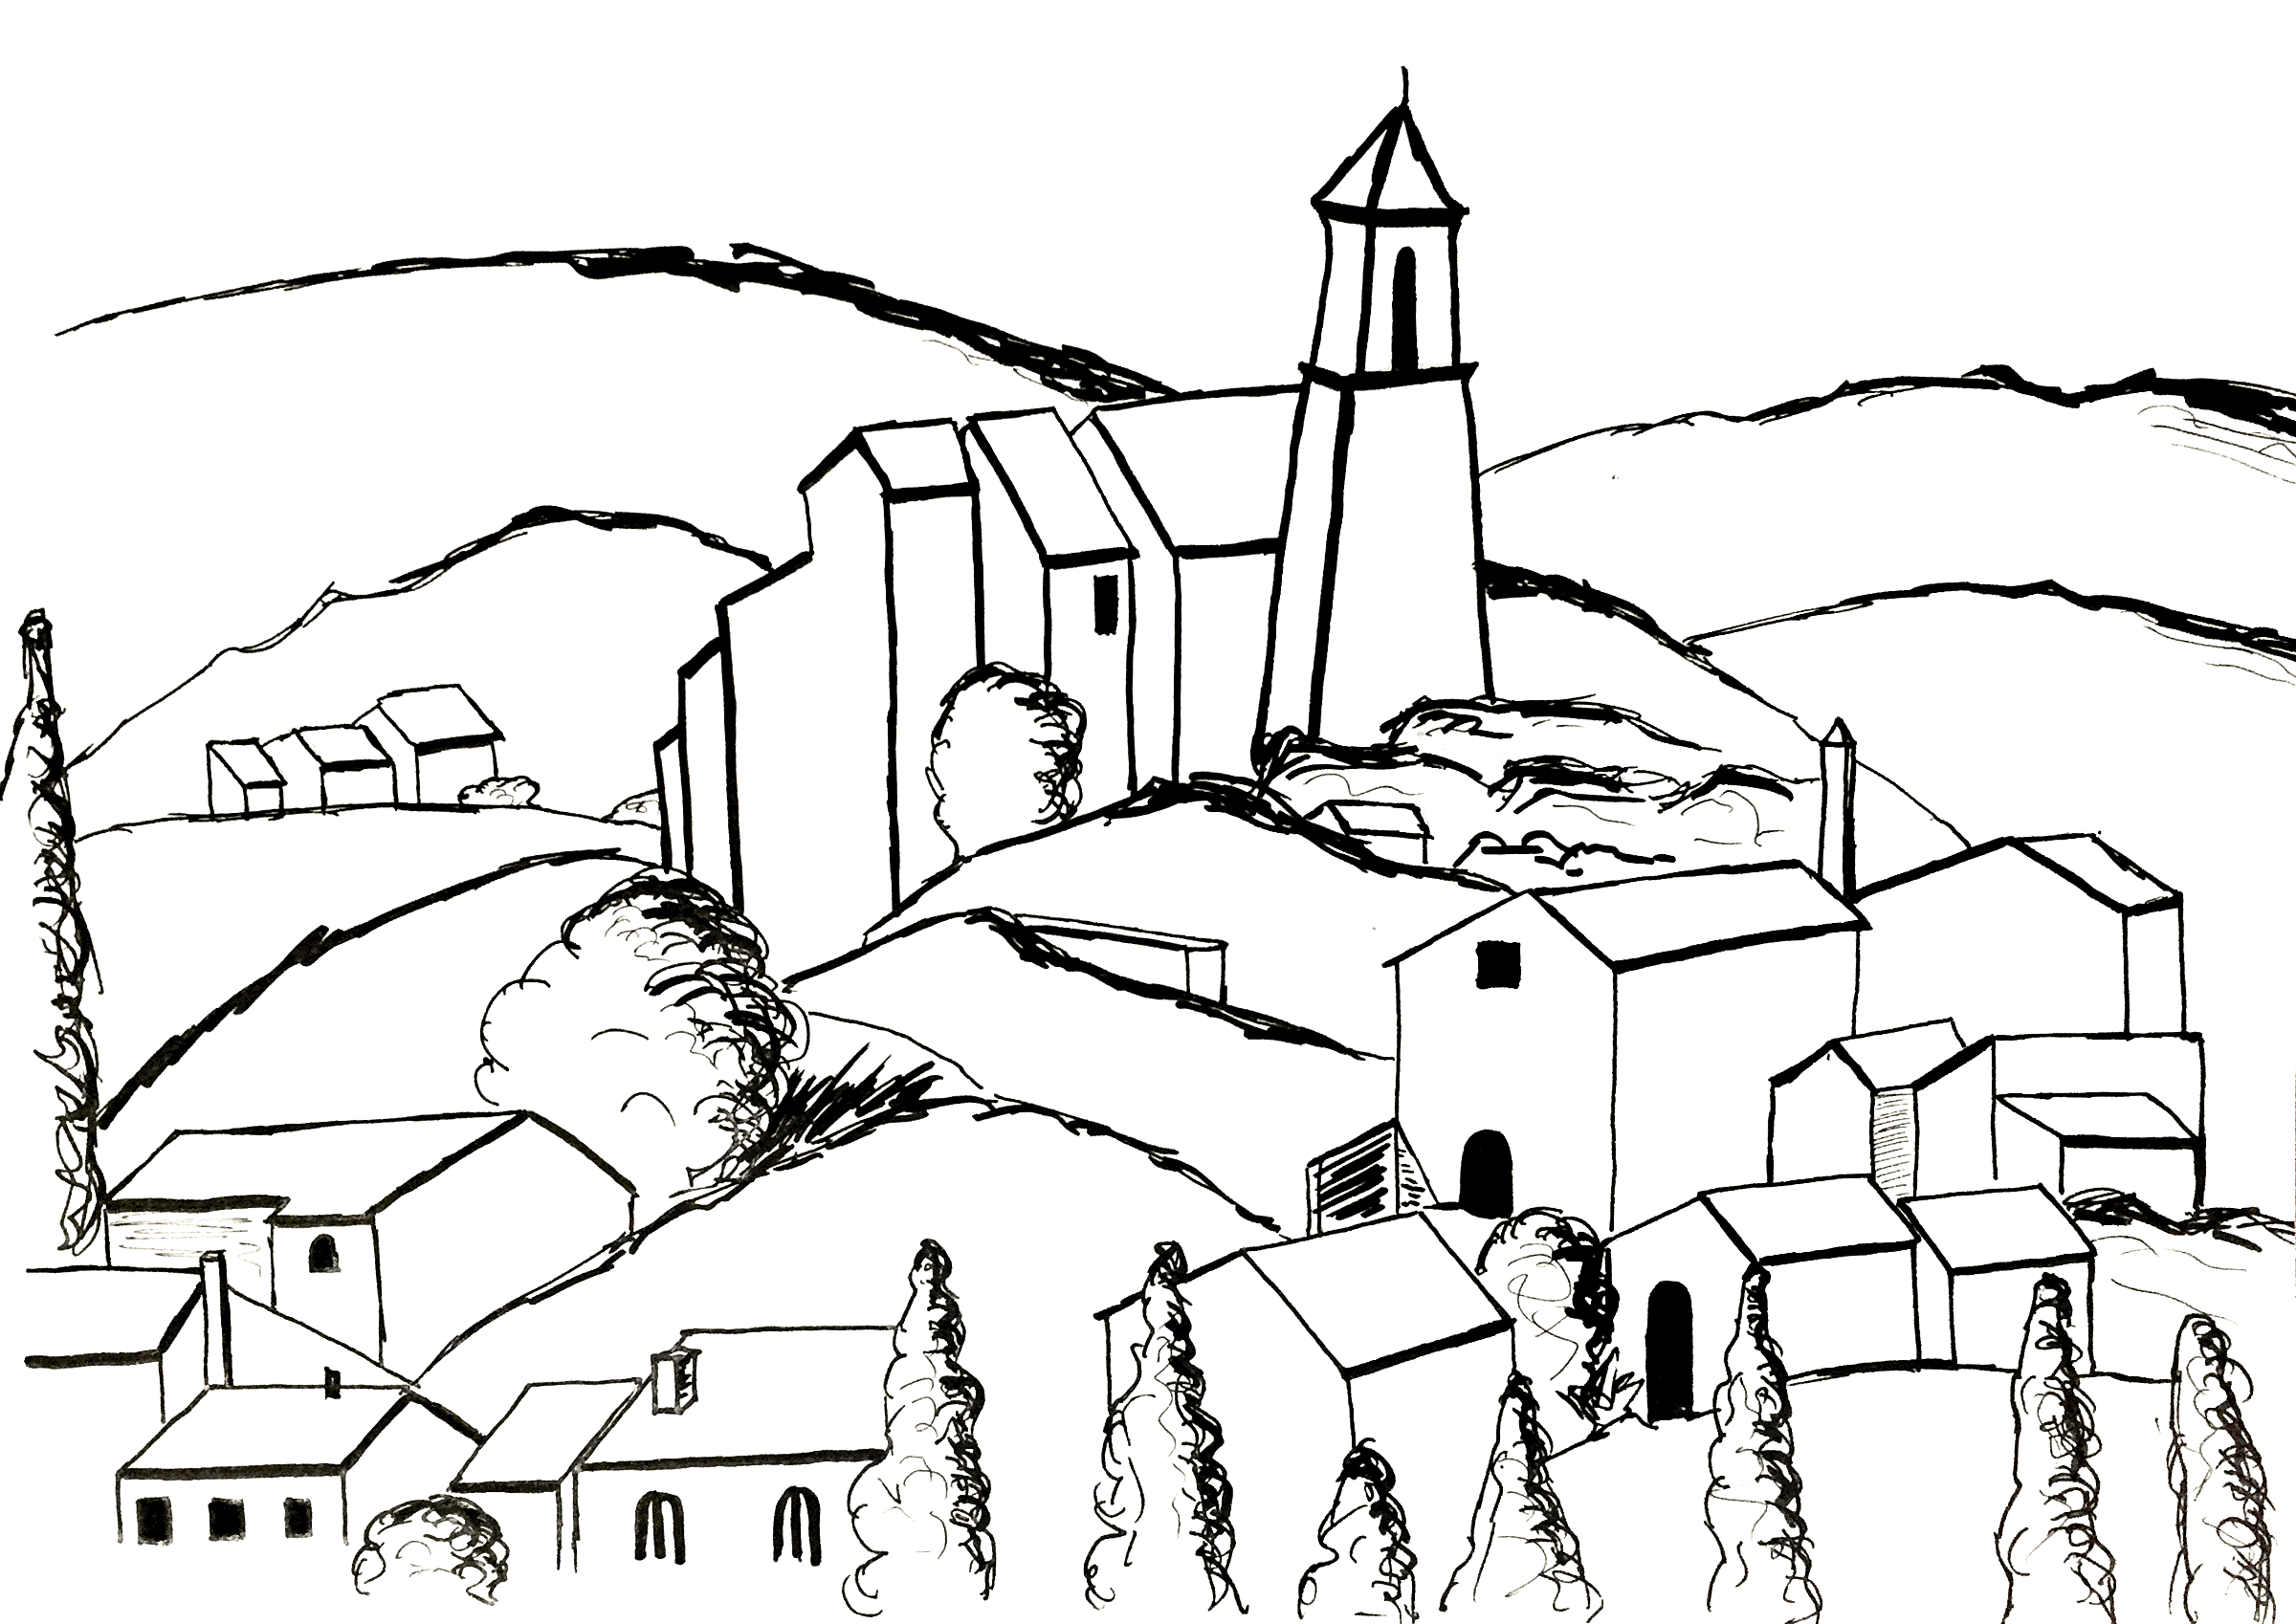 Pagina da colorare ispirata a un dipinto di Paul Cézanne: Gardanne (versione 2). Gardanne, un villaggio situato in Francia, nella regione Provenza-Alpi-Costa Azzurra, è l'unico villaggio dipinto da Cézanne.